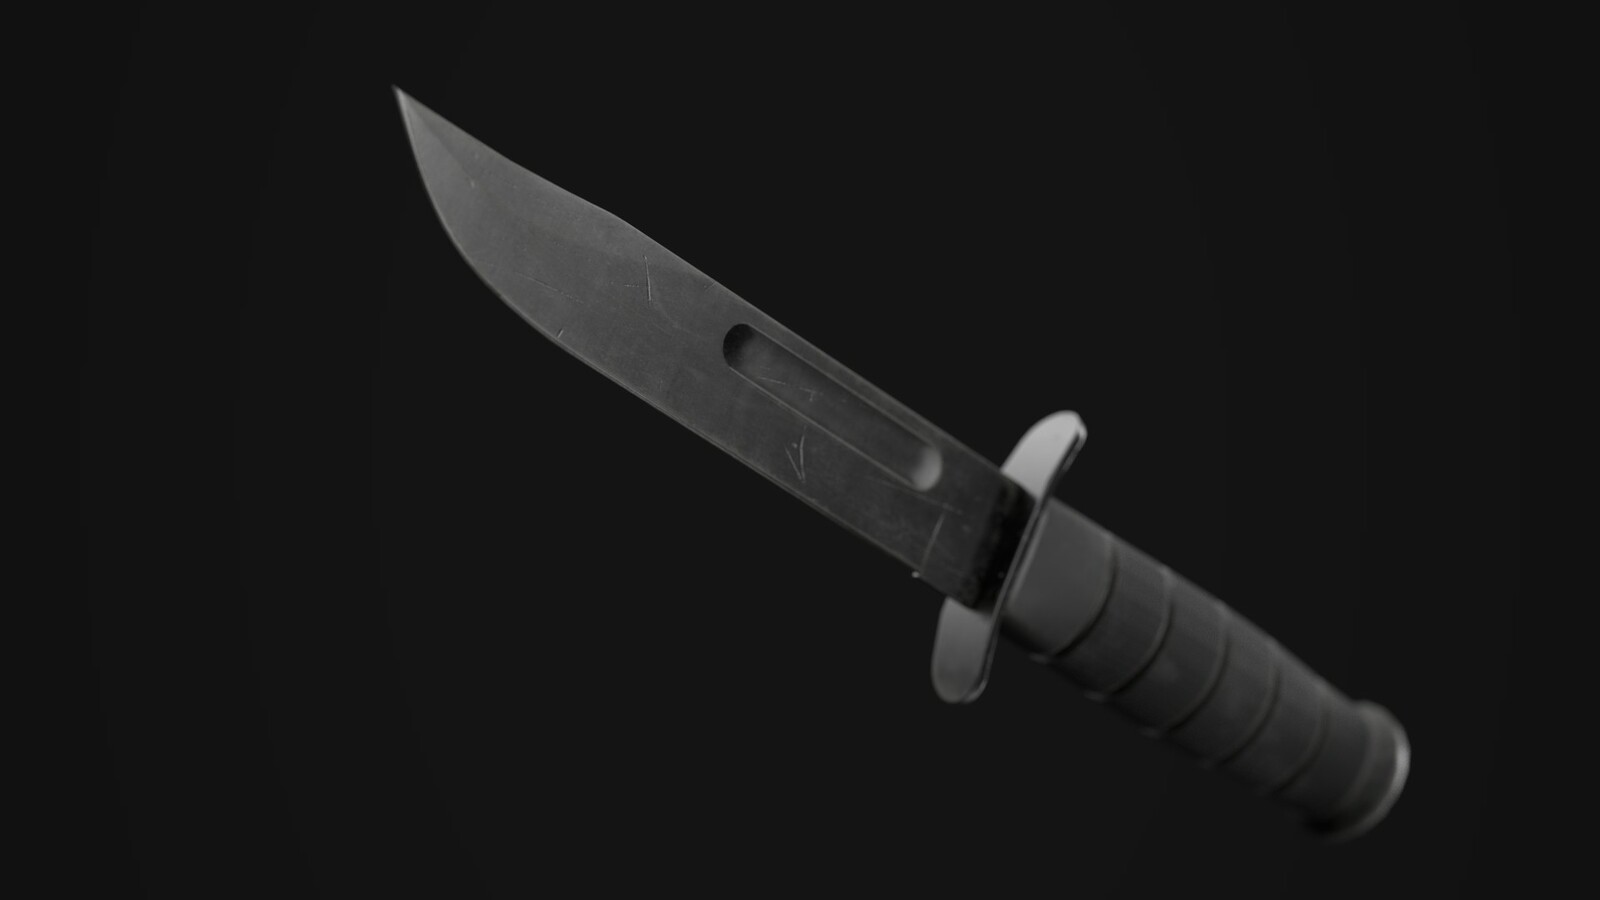 KA-BAR Tactical Knife